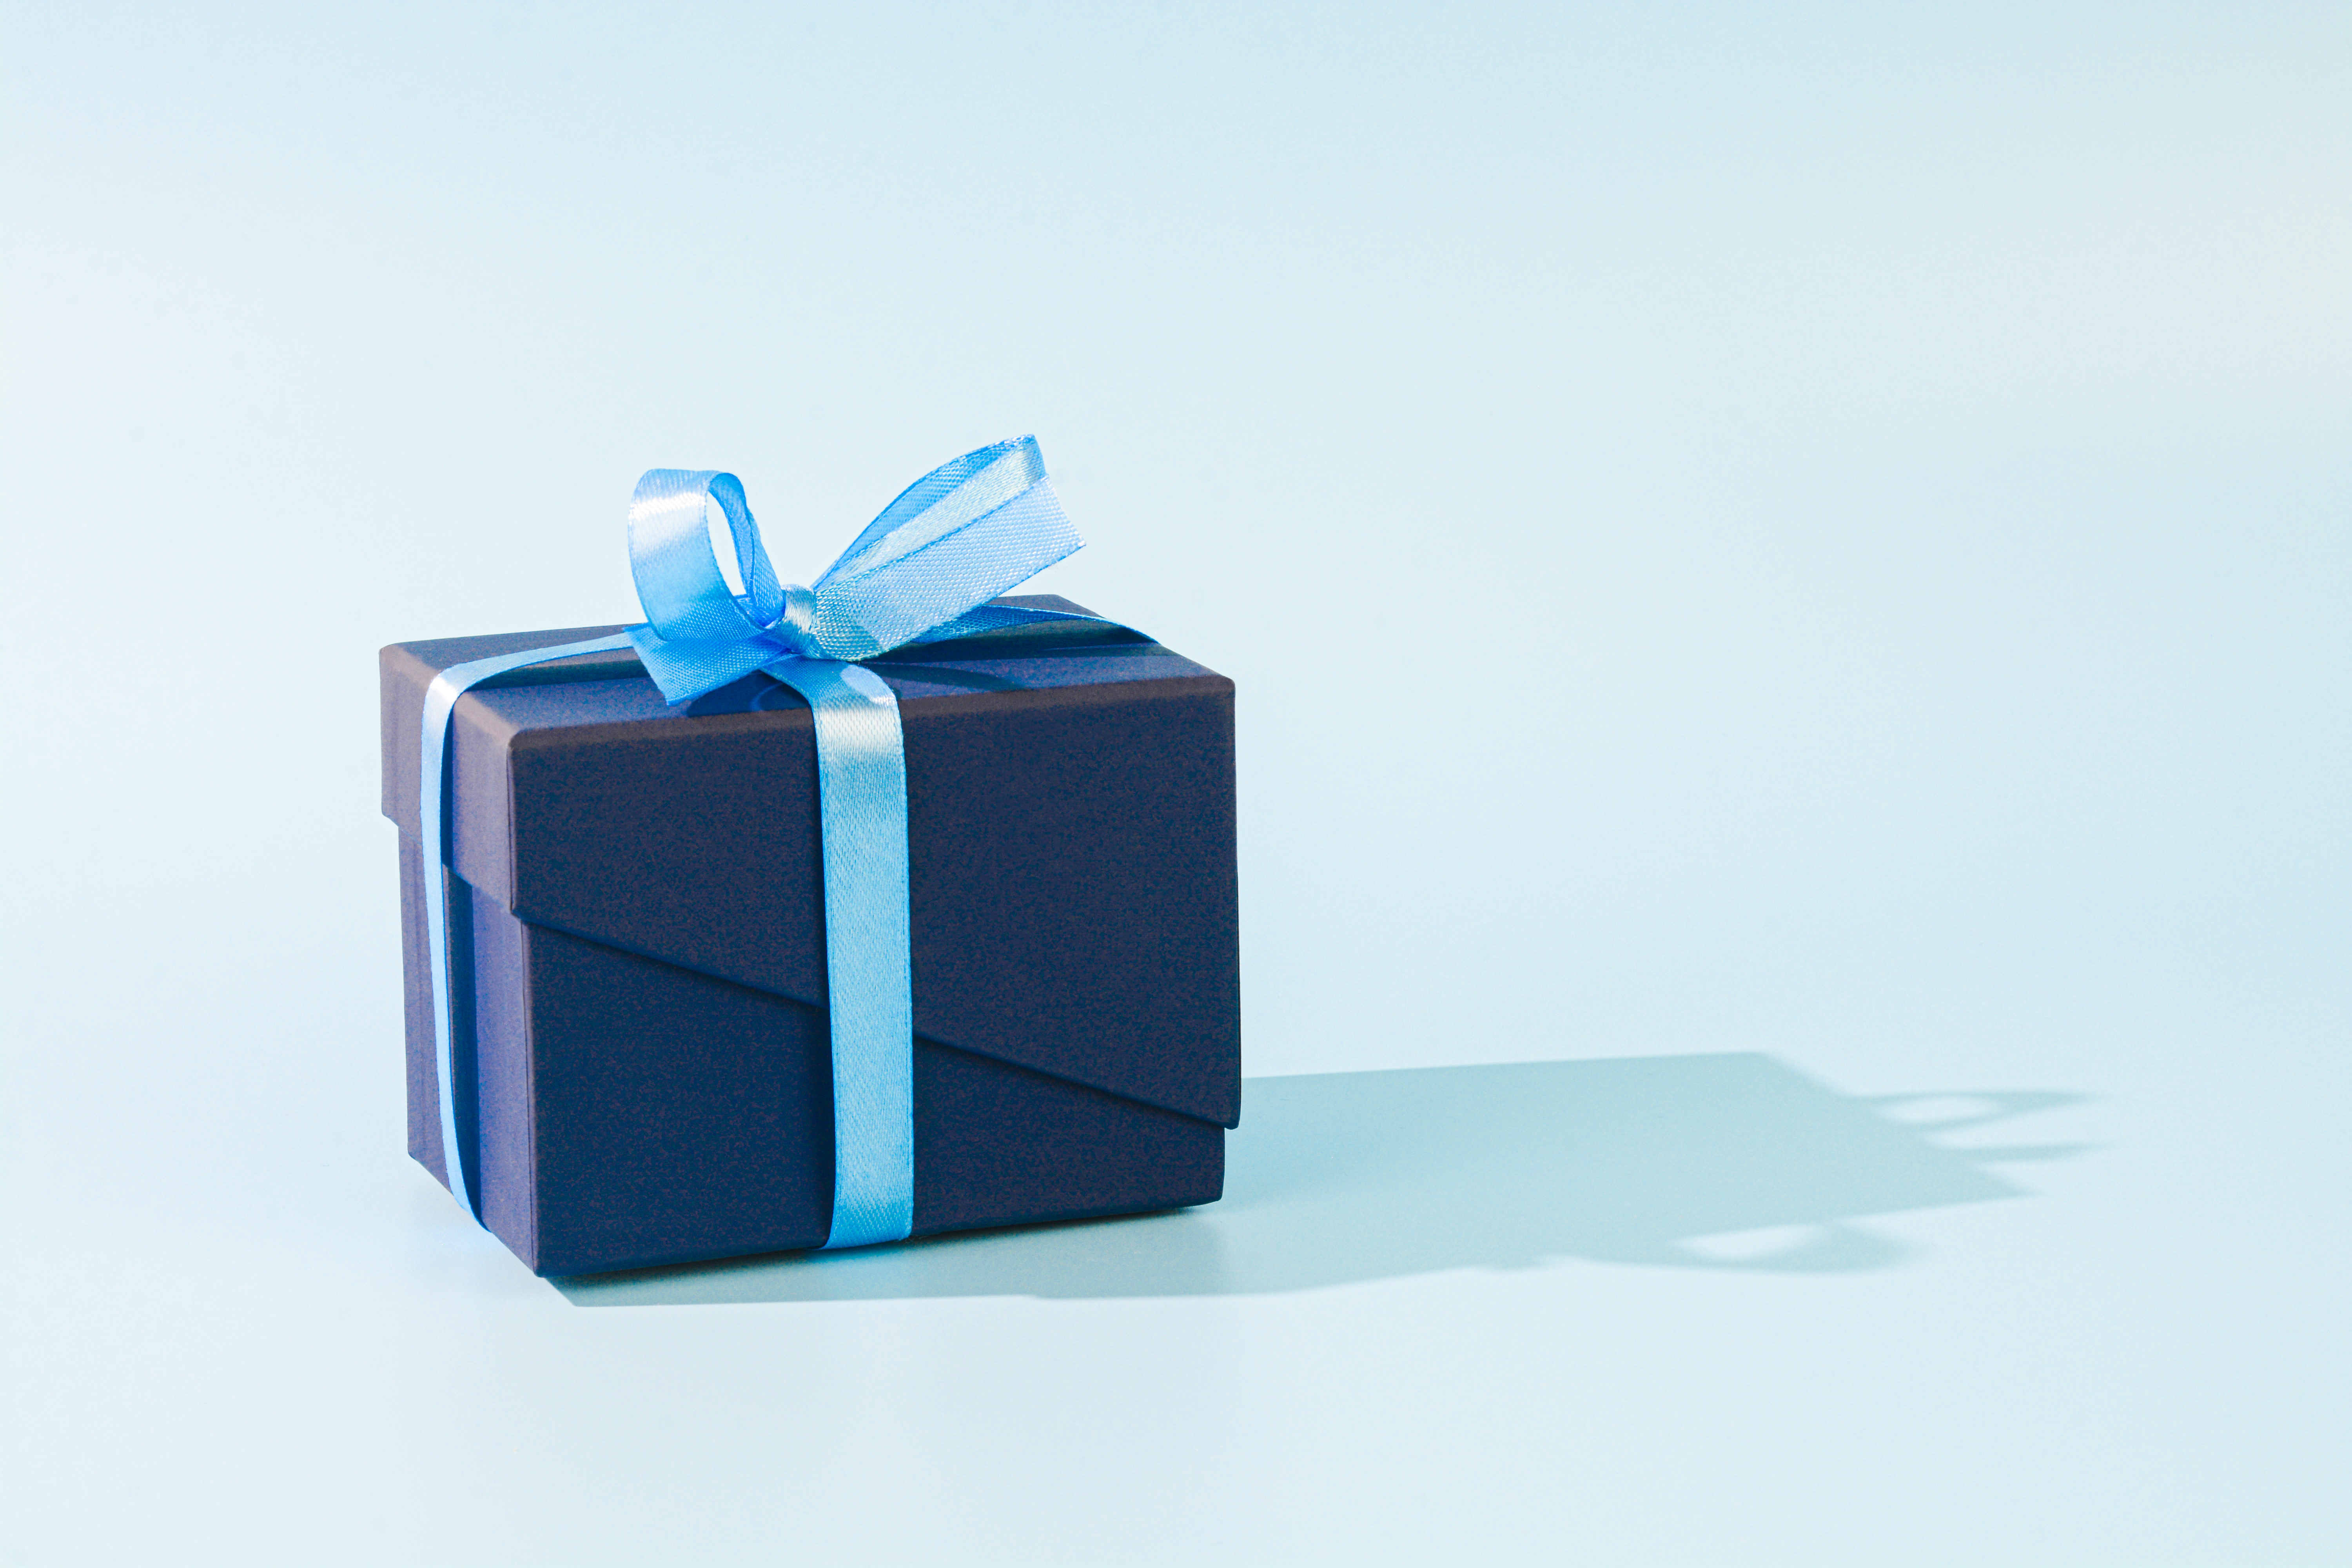 Un regalo envuelto con papel azul oscuro y un lazo azul claro | Foto: Getty Images